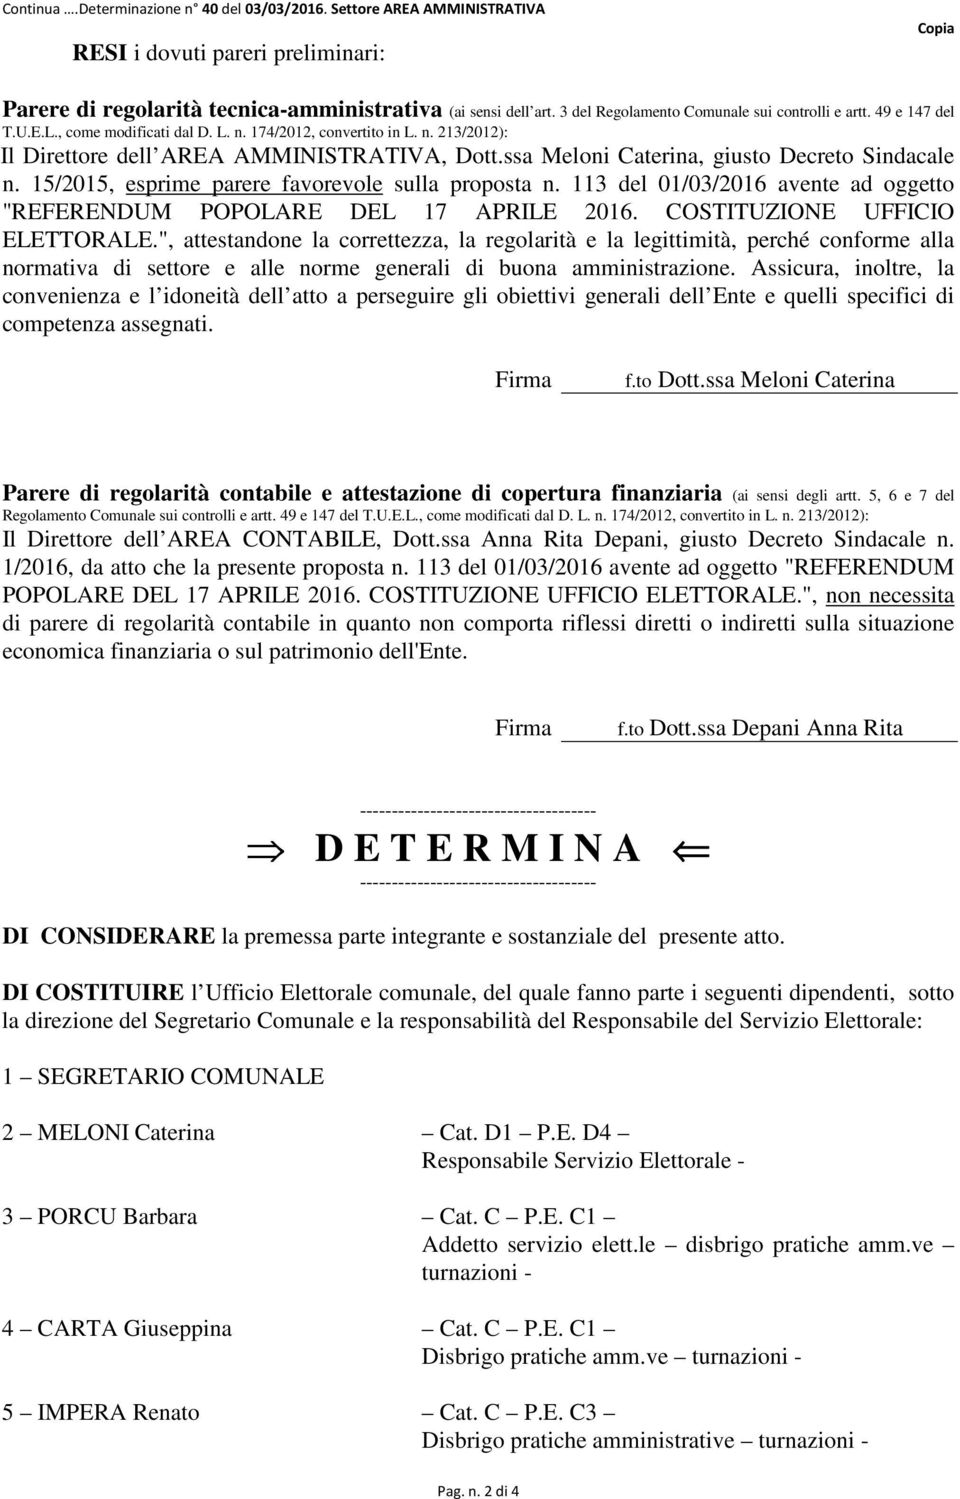 ssa Meloni Caterina, giusto Decreto Sindacale n. 15/2015, esprime parere favorevole sulla proposta n. 113 del 01/03/2016 avente ad oggetto "REFERENDUM POPOLARE DEL 17 APRILE 2016.